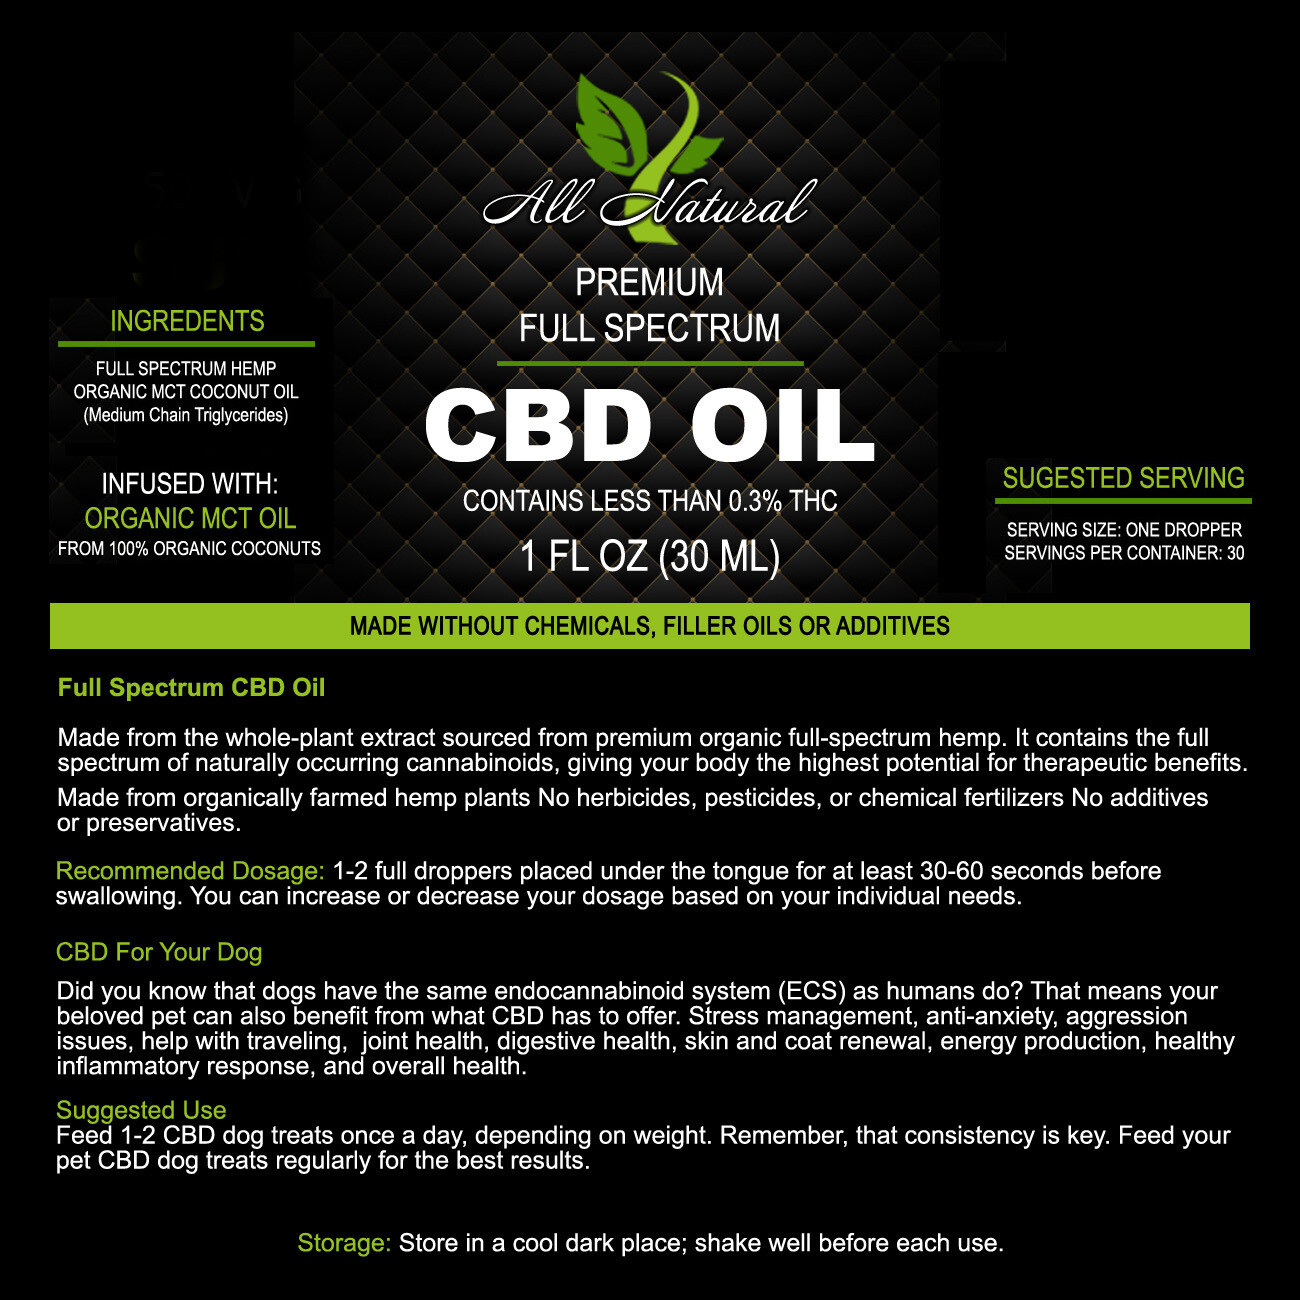 Full Spectrum Organic CBD-Oil